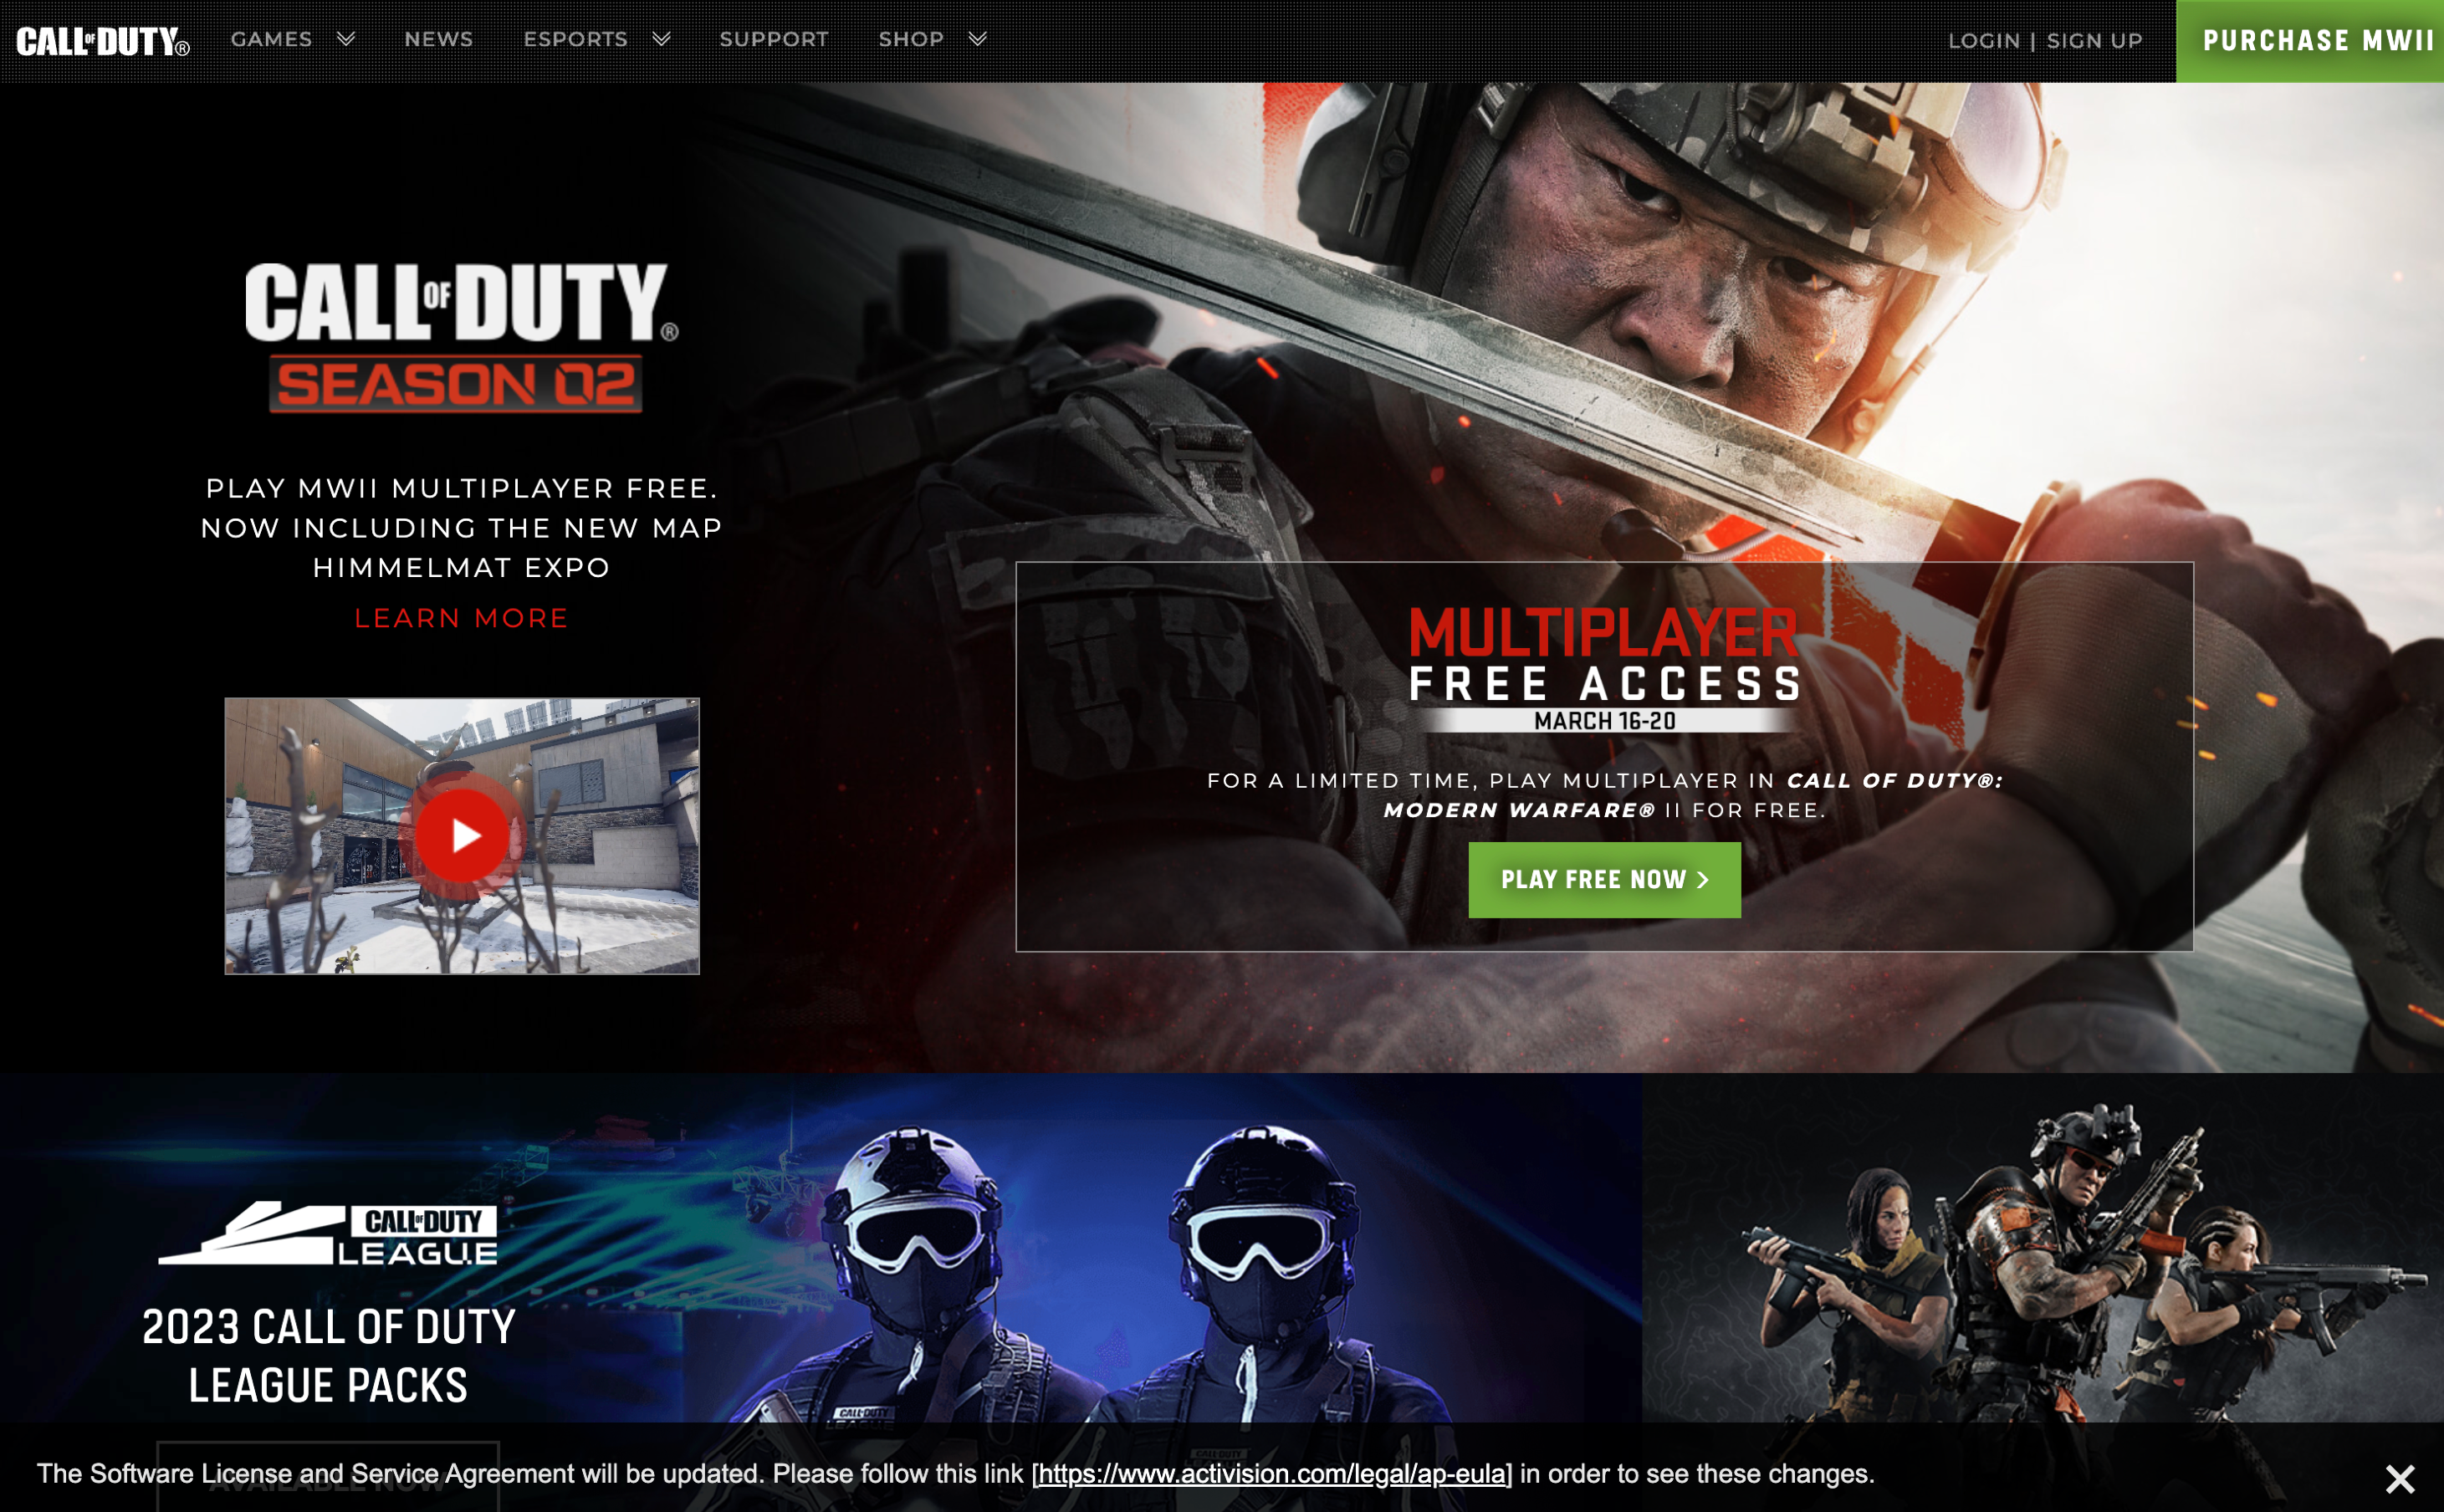 Screenshot of Call of Duty homepage